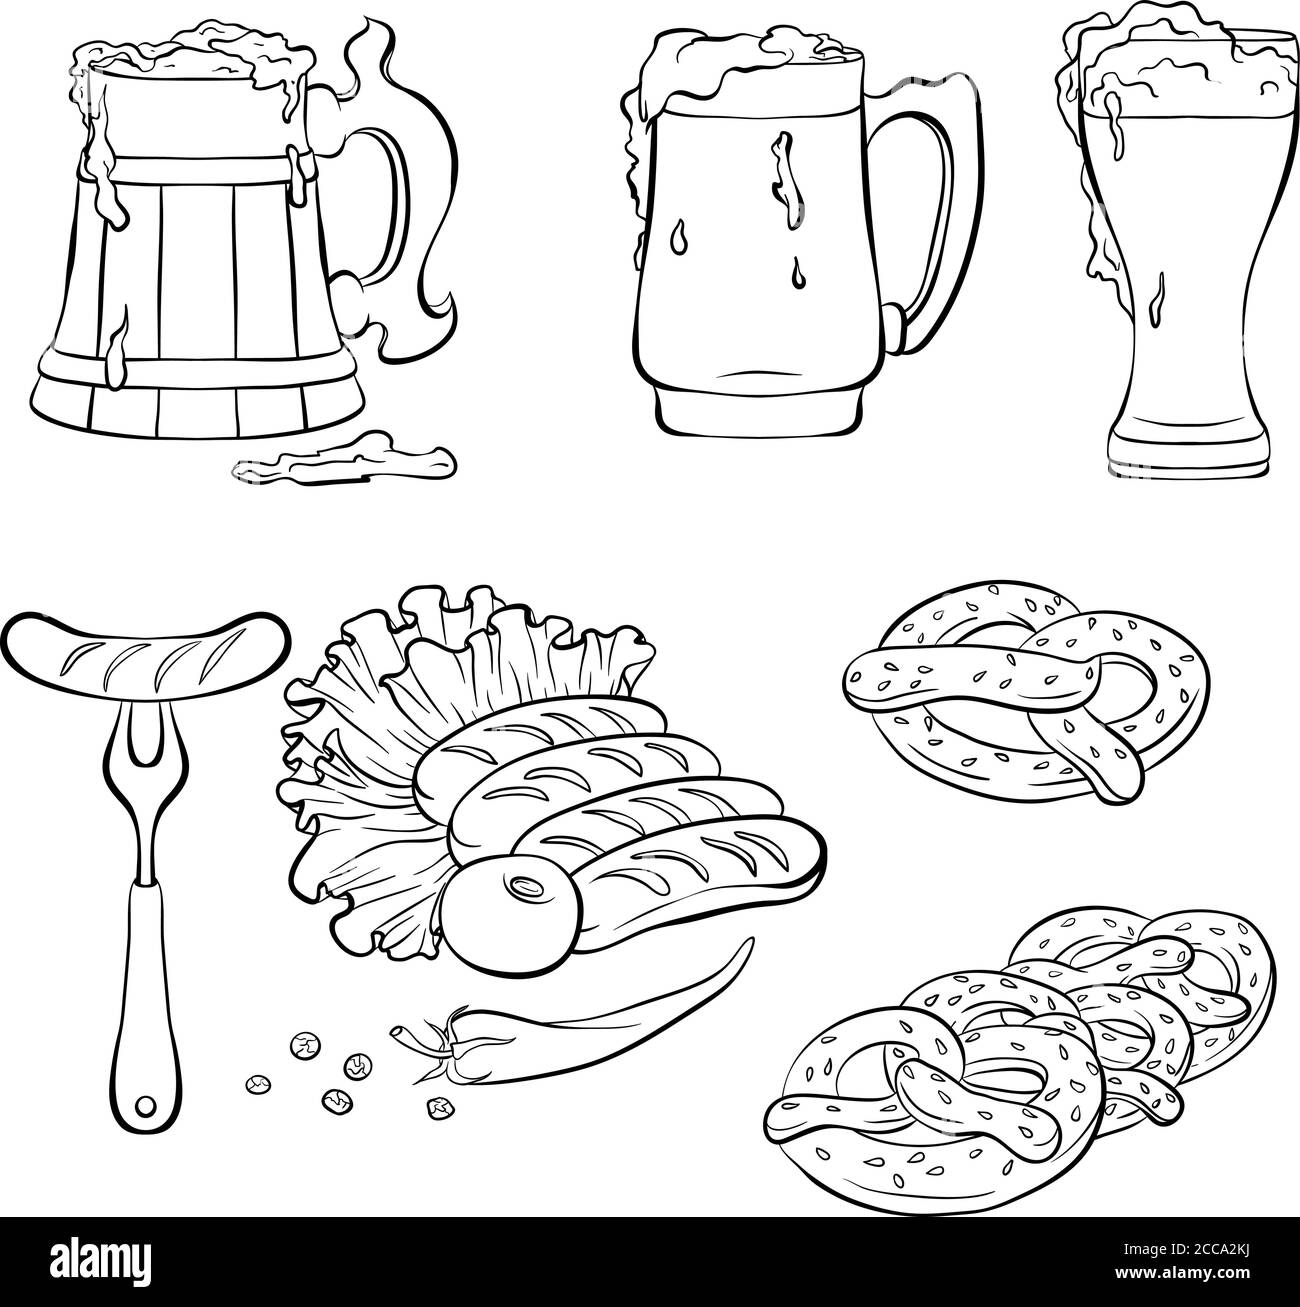 Décor aux éléments traditionnels du festival de la bière Oktoberfest. Style art de ligne. Illustration vectorielle dessinée à la main isolée sur fond blanc Illustration de Vecteur